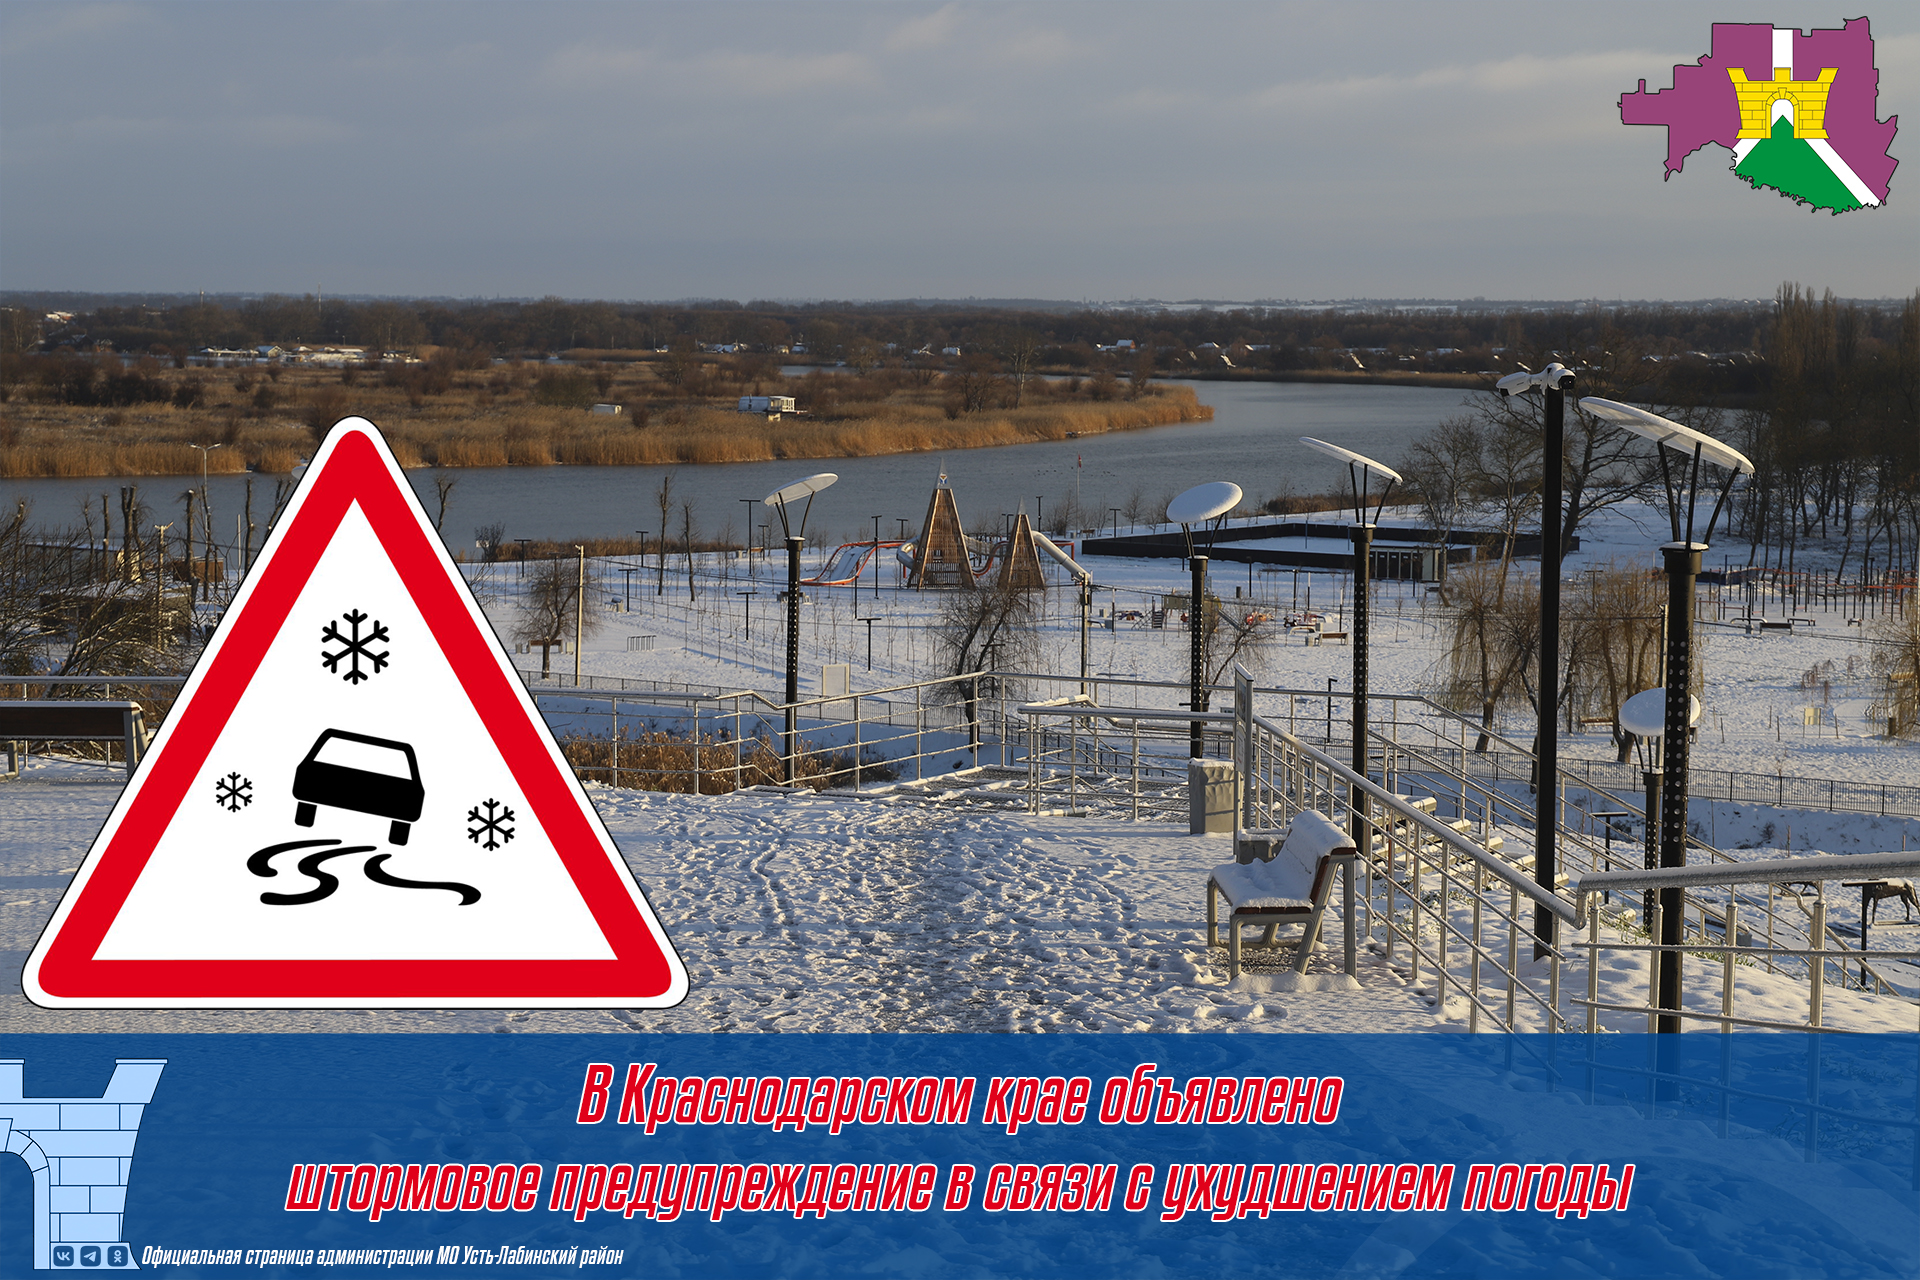 В Краснодарском крае объявлено штормовое предупреждение в связи с ухудшением погоды